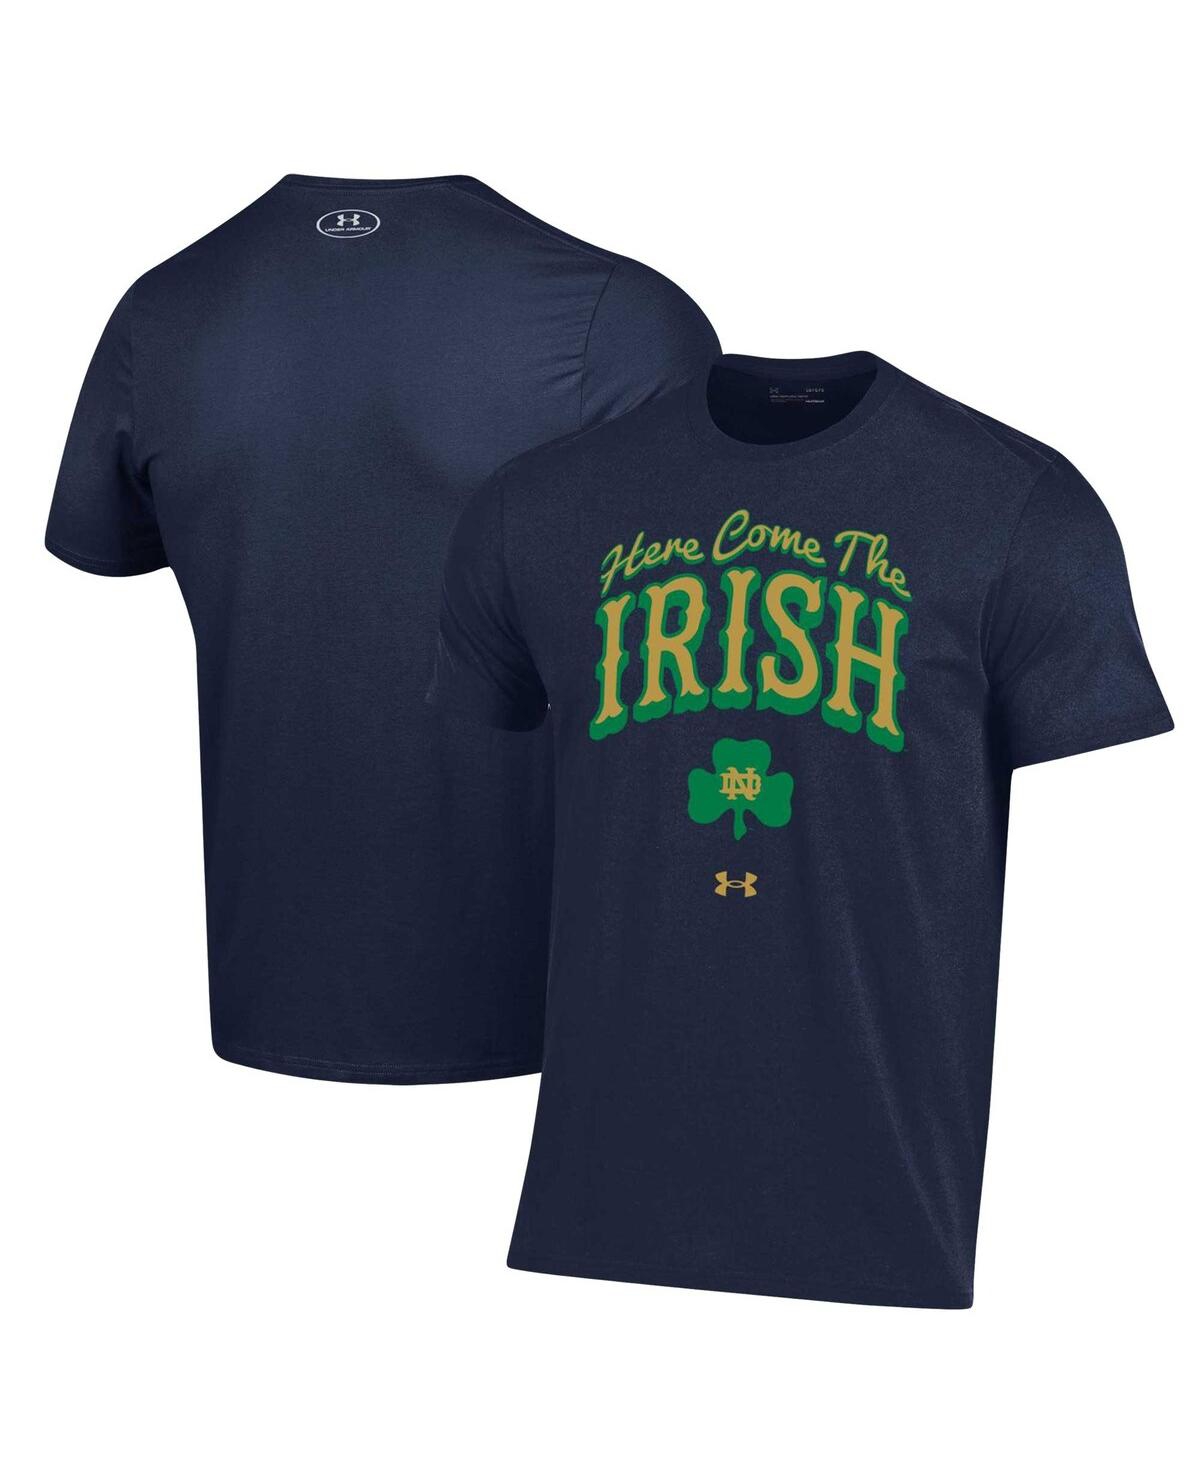 Under Armour Men's  Navy Notre Dame Fighting Irish Here Come The Irish T-shirt